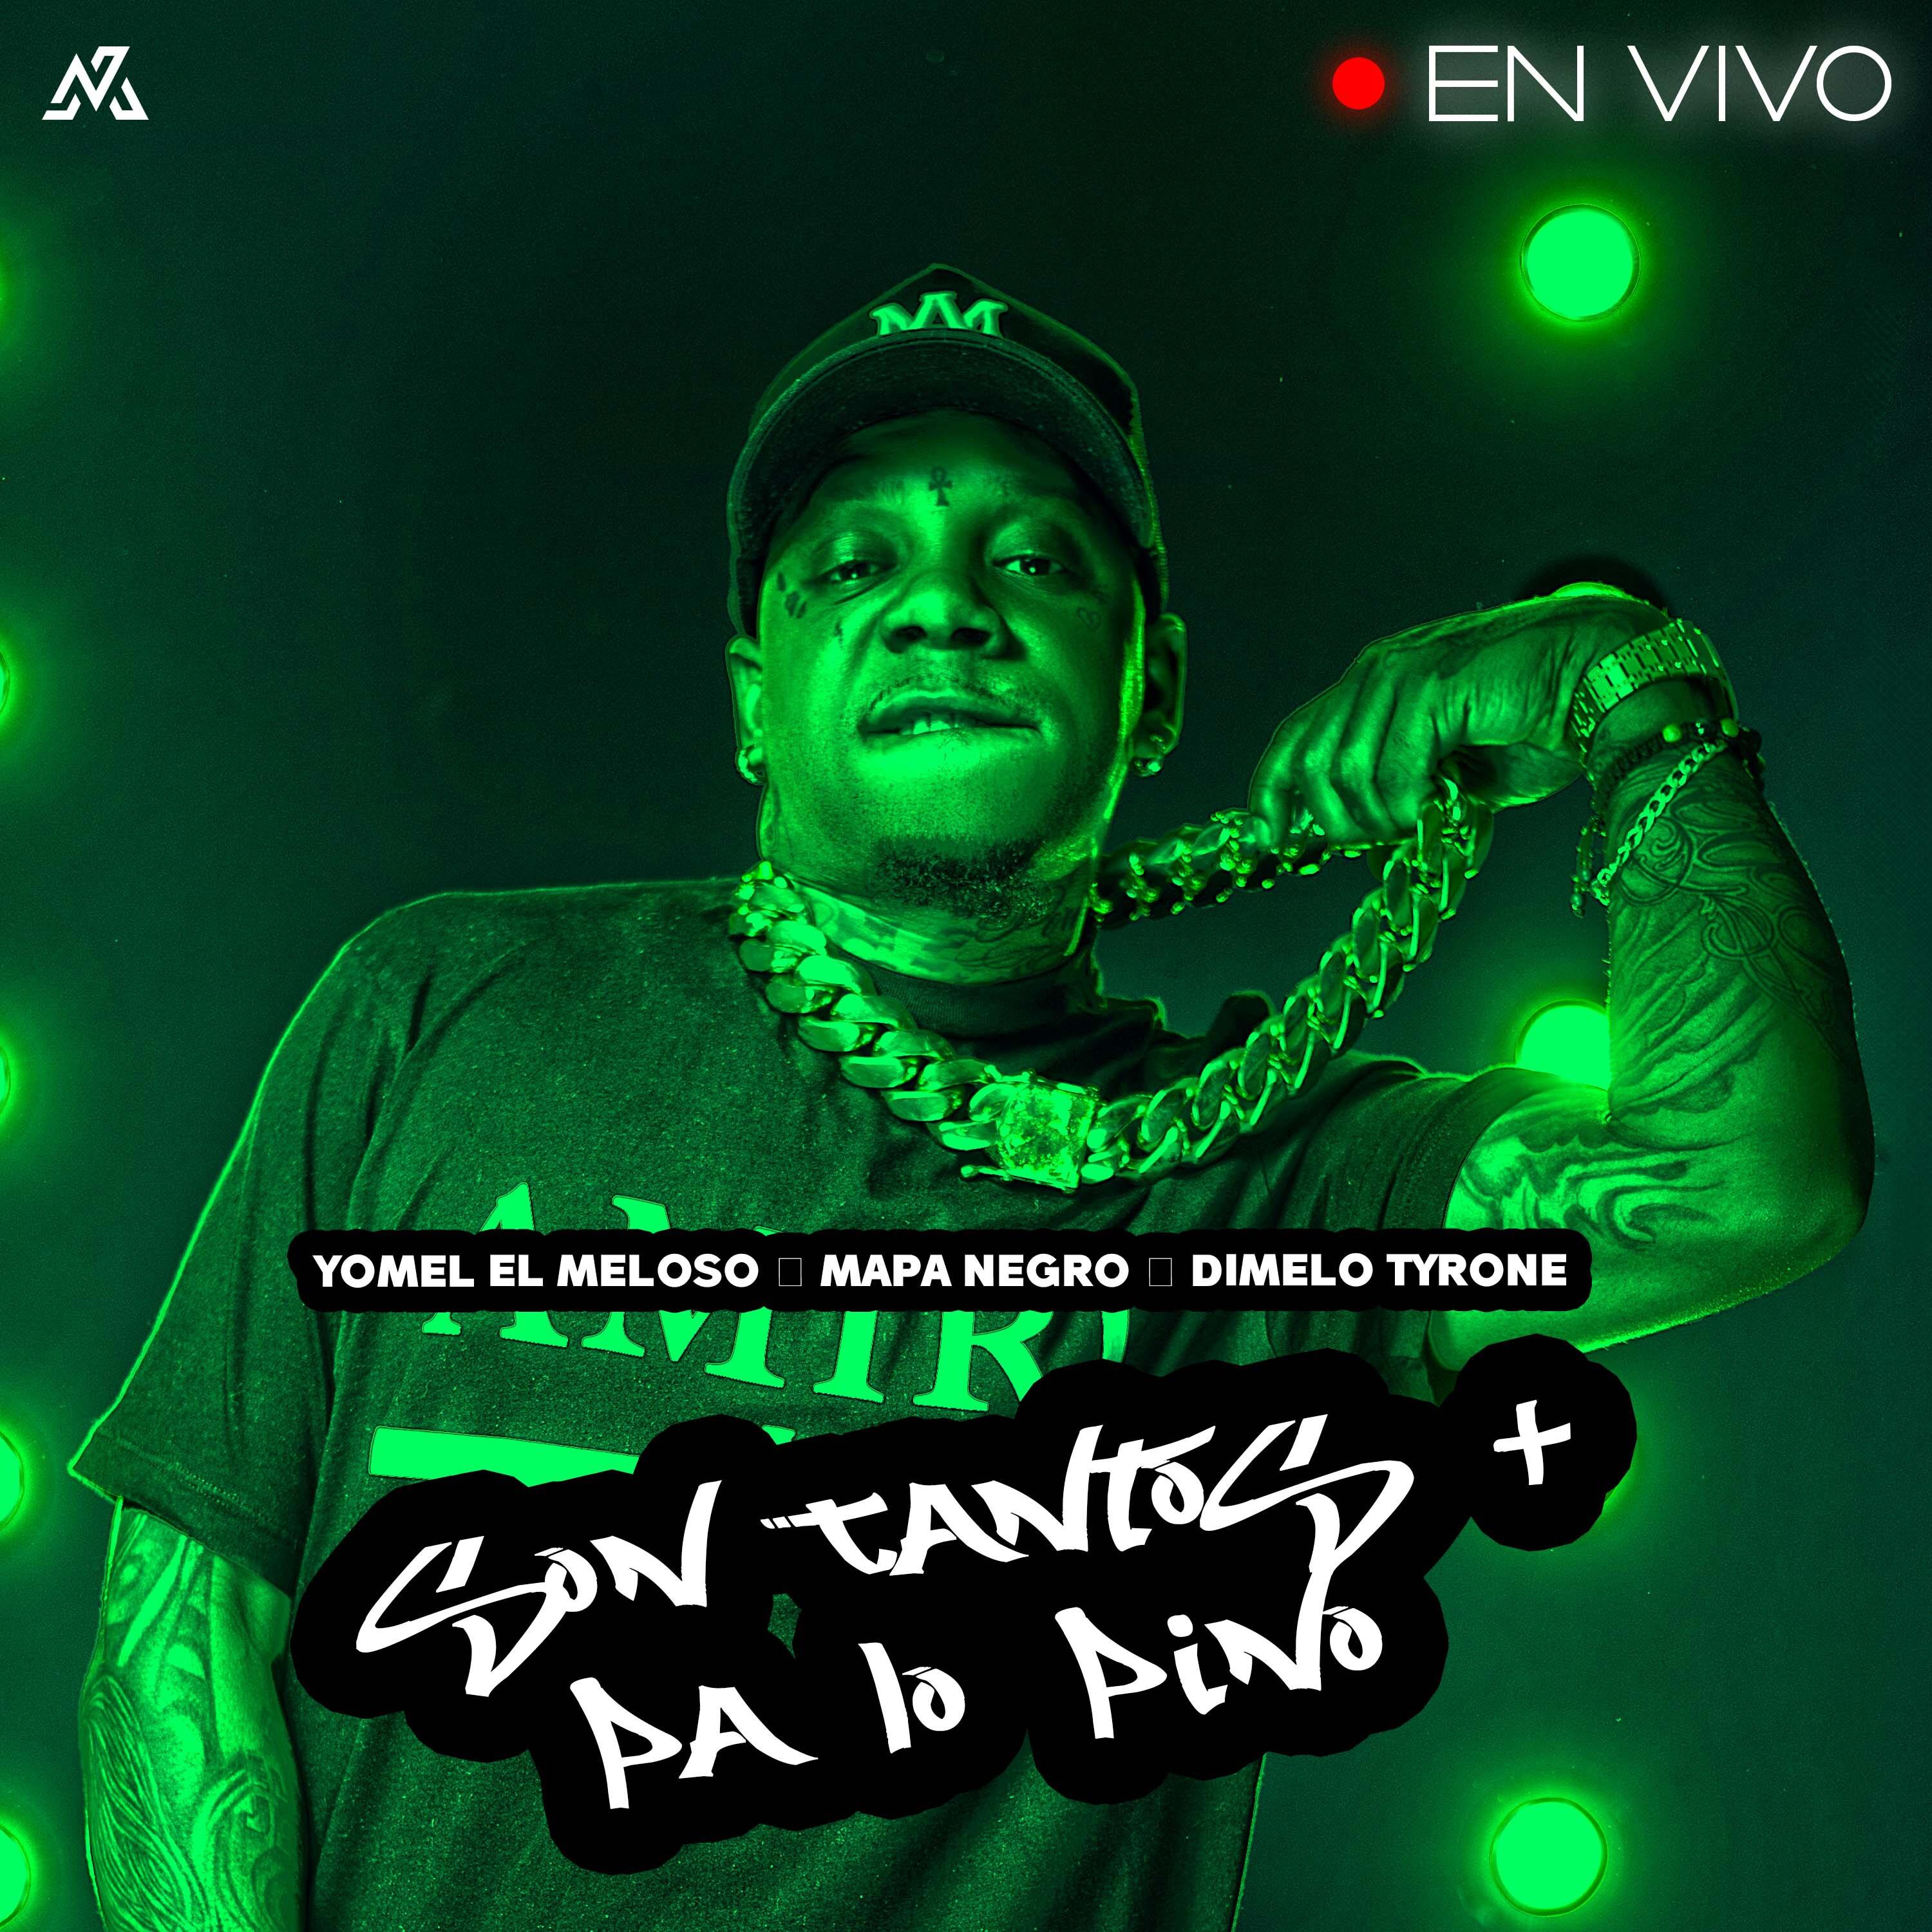 Постер альбома Son Tantos + Pa Lo Pino